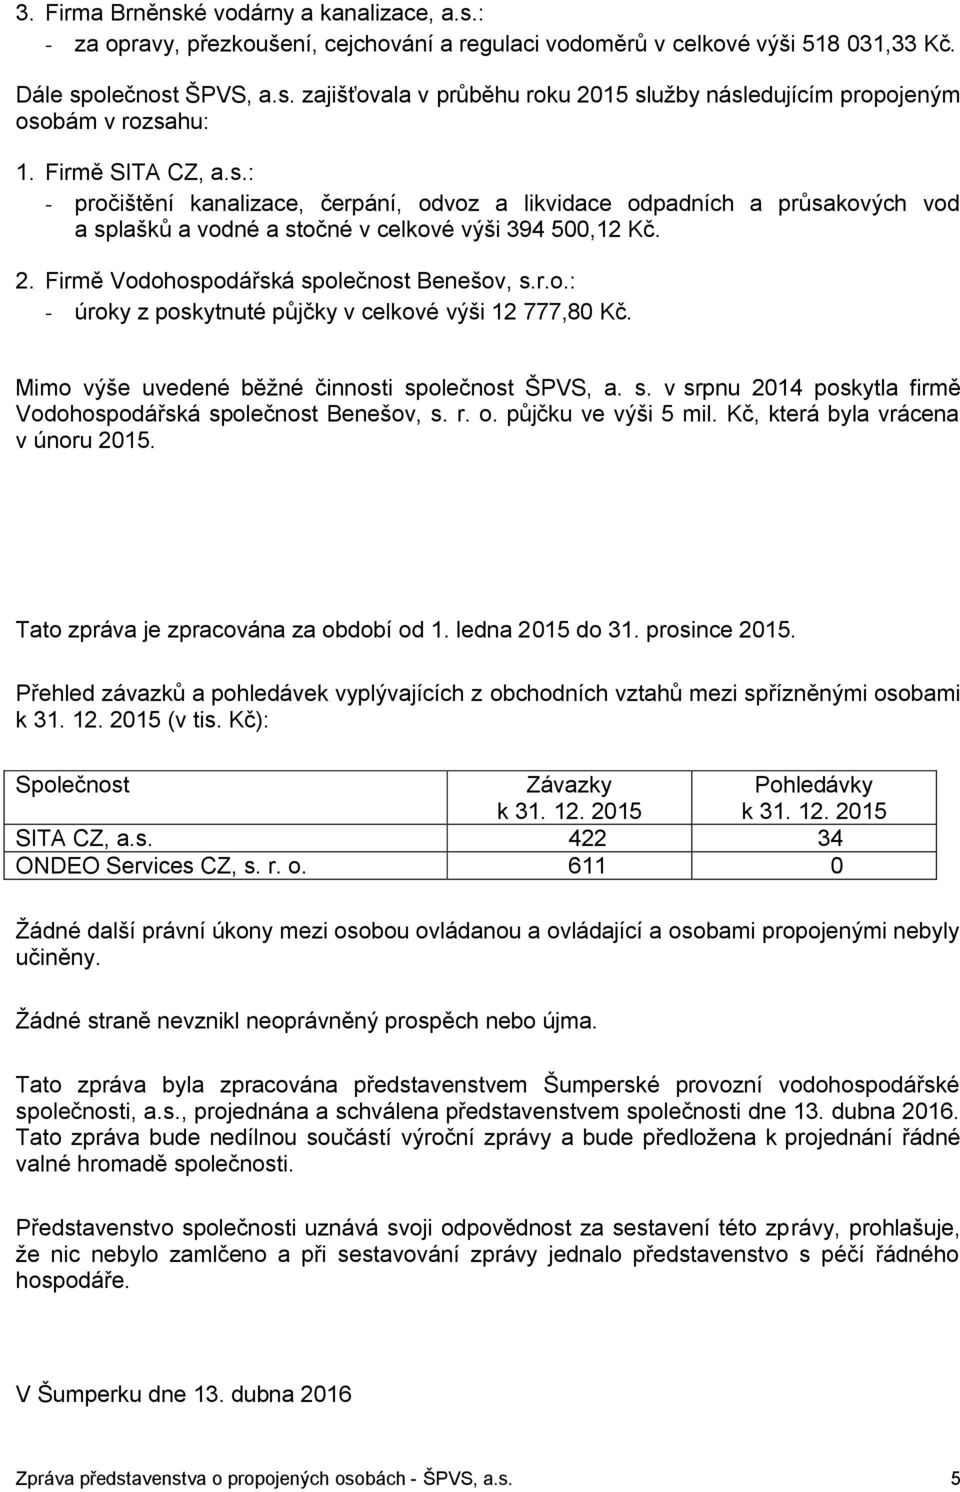 Firmě Vodohospodářská společnost Benešov, s.r.o.: - úroky z poskytnuté půjčky v celkové výši 12 777,80 Kč. Mimo výše uvedené běžné činnosti společnost ŠPVS, a. s. v srpnu 2014 poskytla firmě Vodohospodářská společnost Benešov, s.